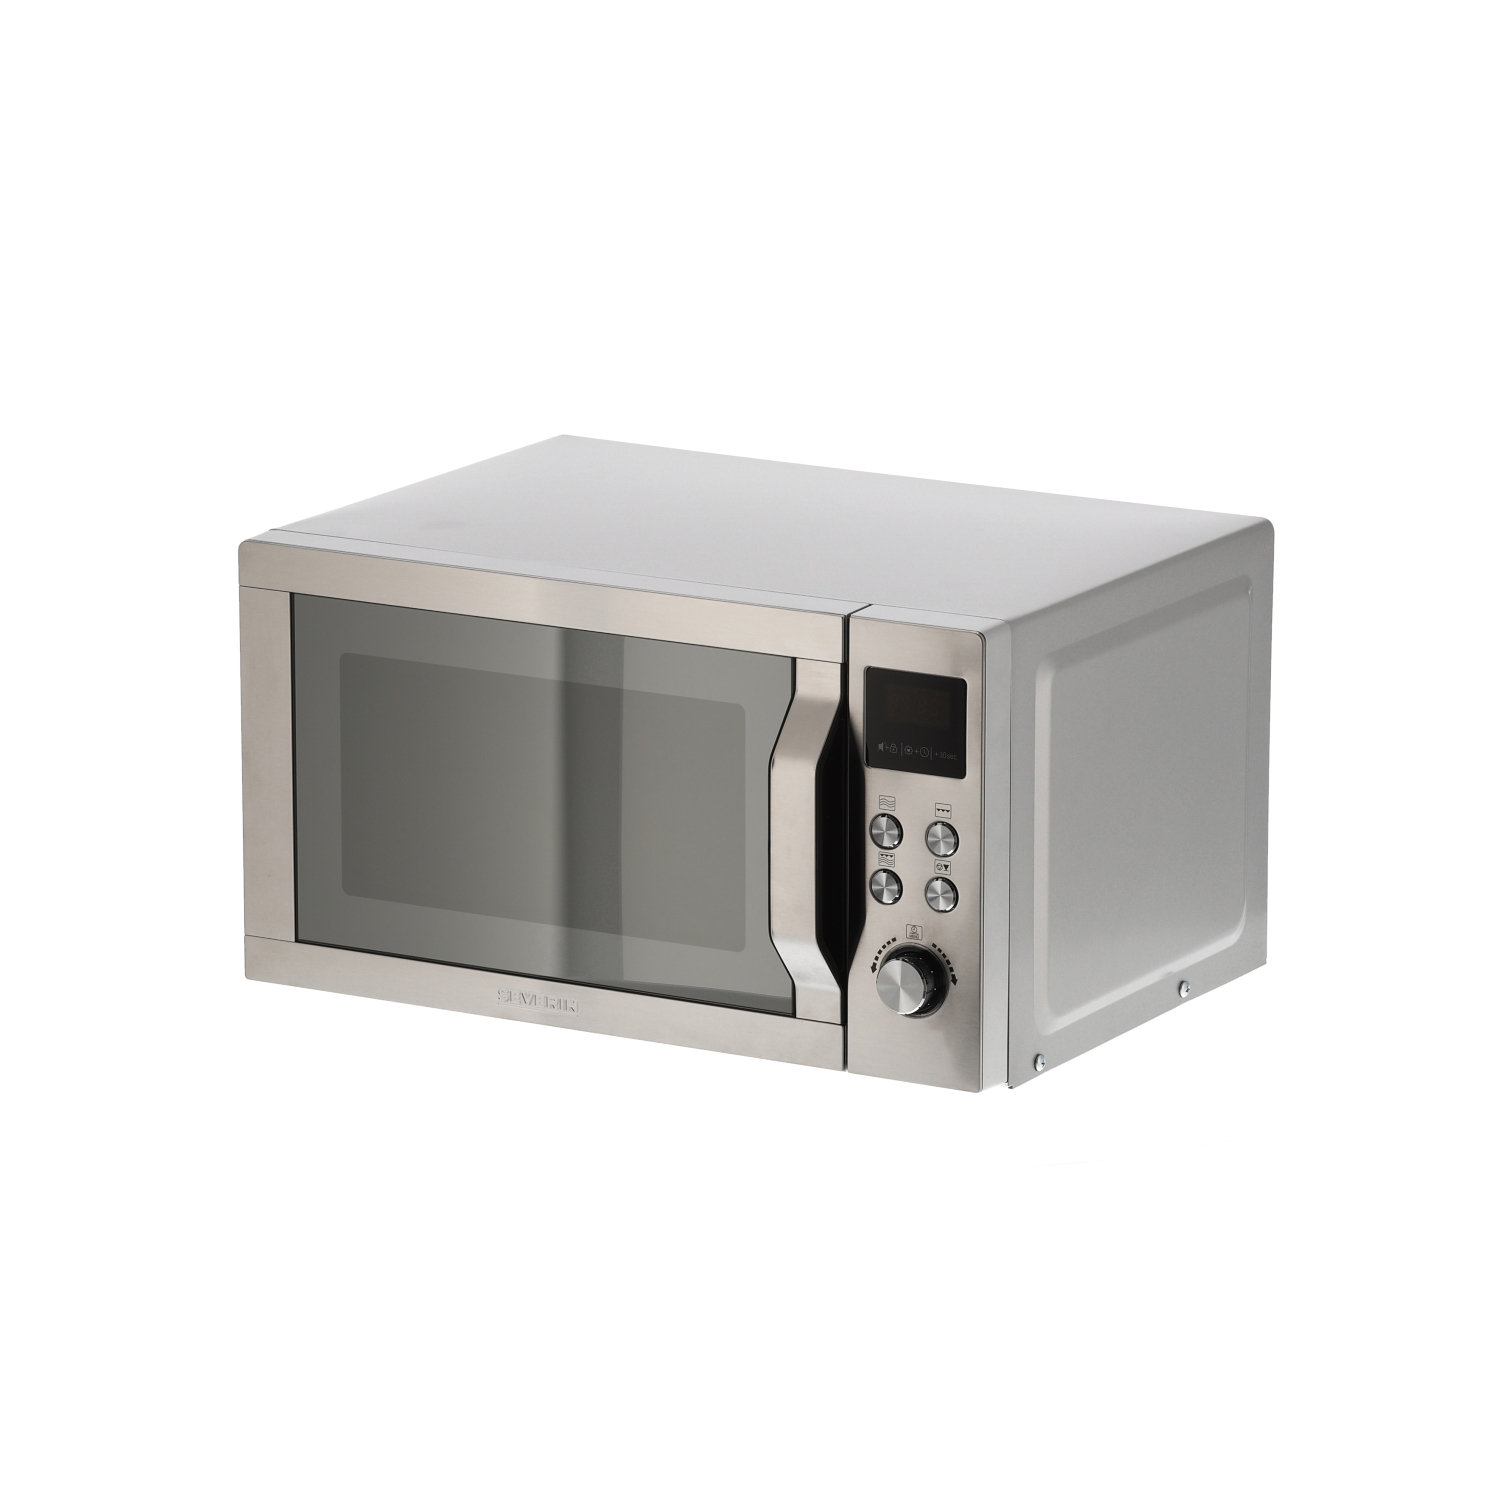 SEVERIN Mikrowelle mit Grillfunktion 2-in-1 Leistung Liter W (Grill 20 W), Kapazität, Edelstahl-Design 800 7751, ZM 1.000